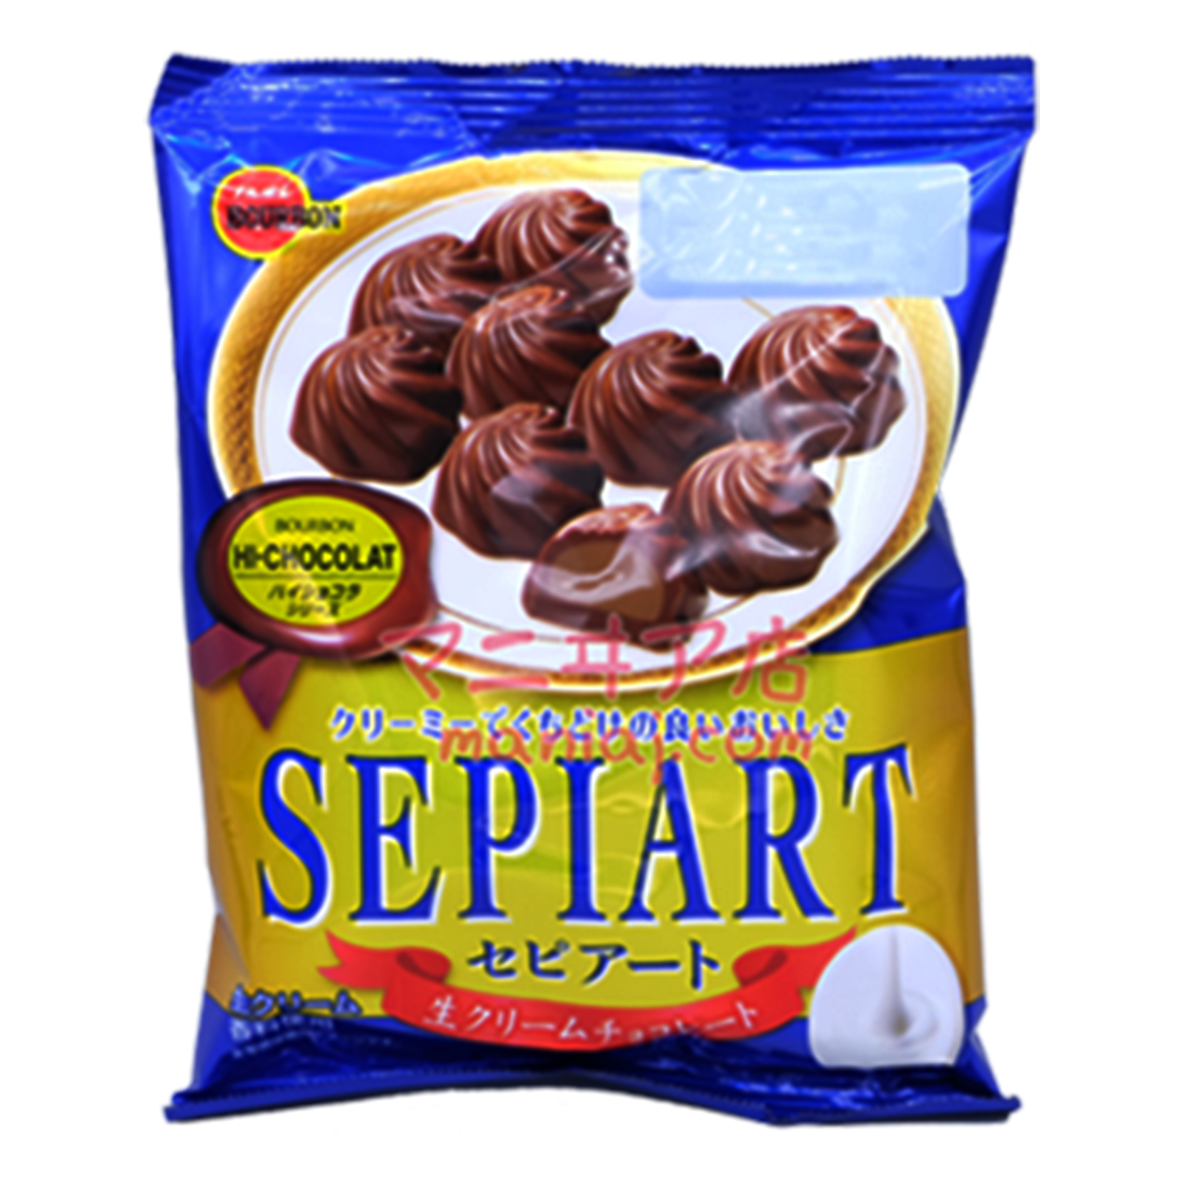 SEPIART Cream Chocolate